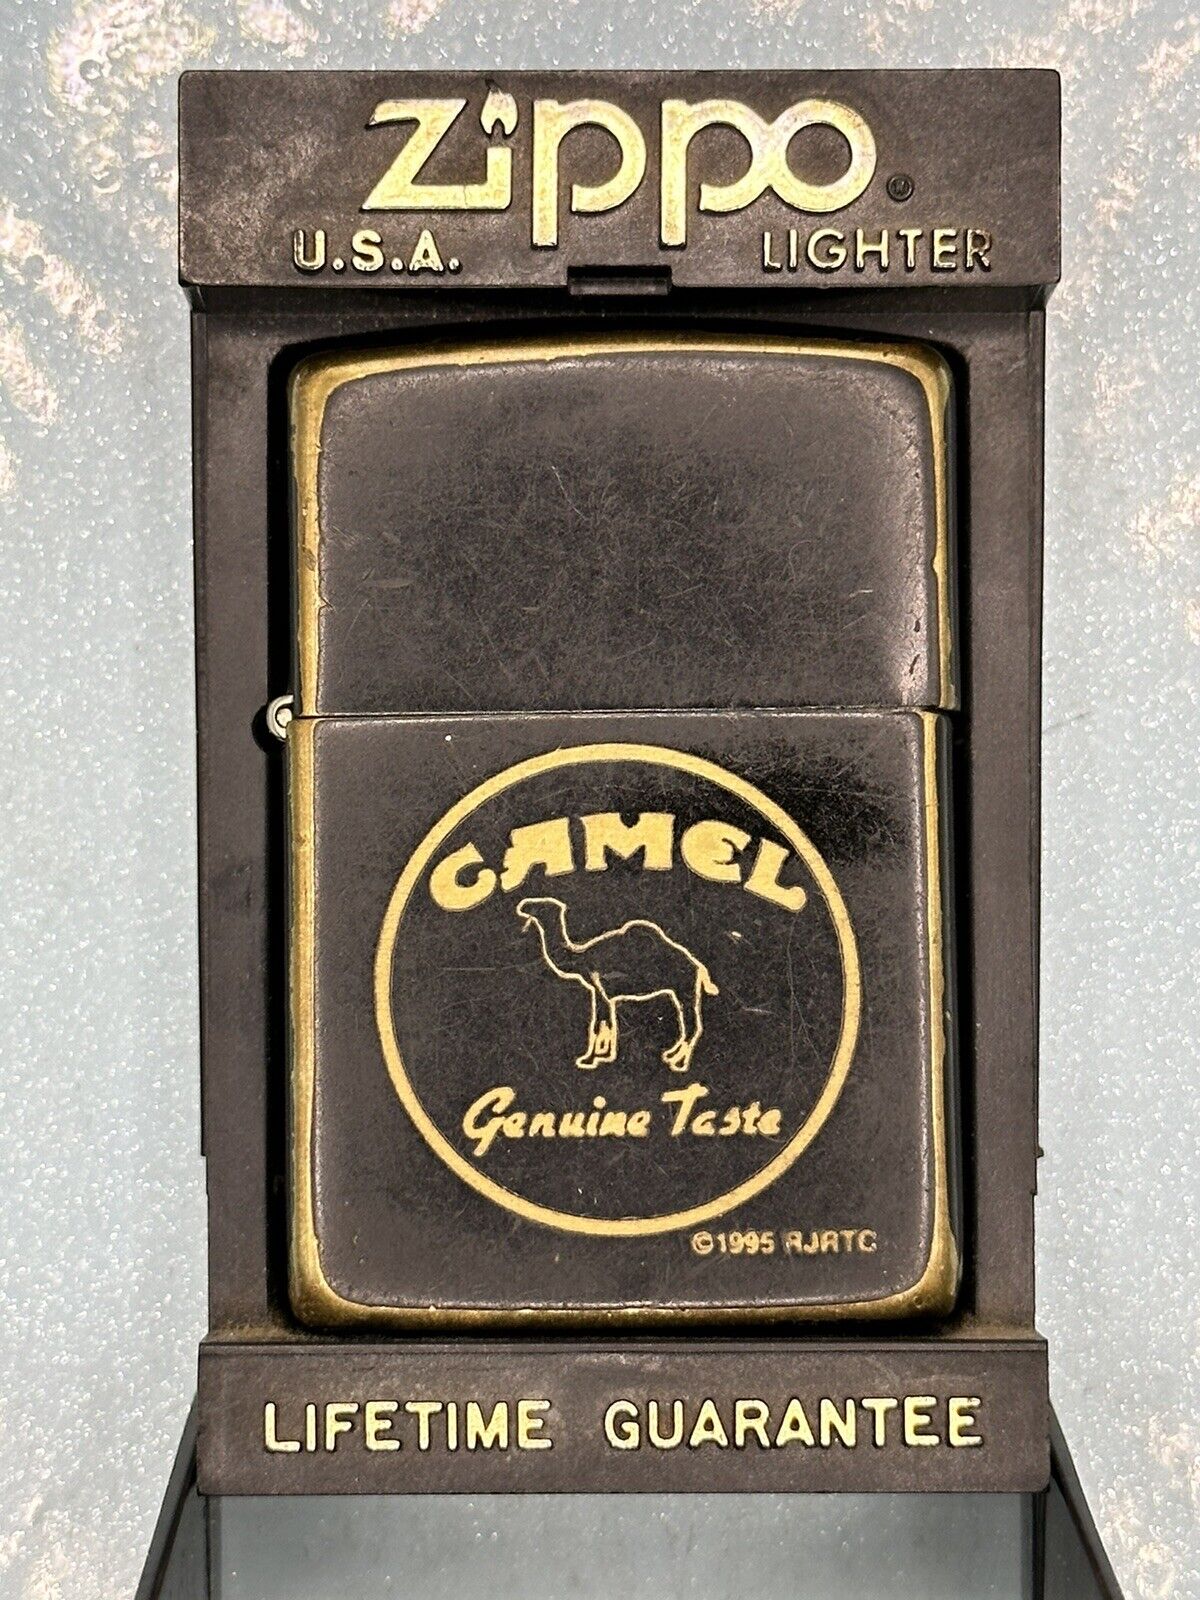 Vintage 1994 Camel Genuine Taste Black Matte Zippo Lighter